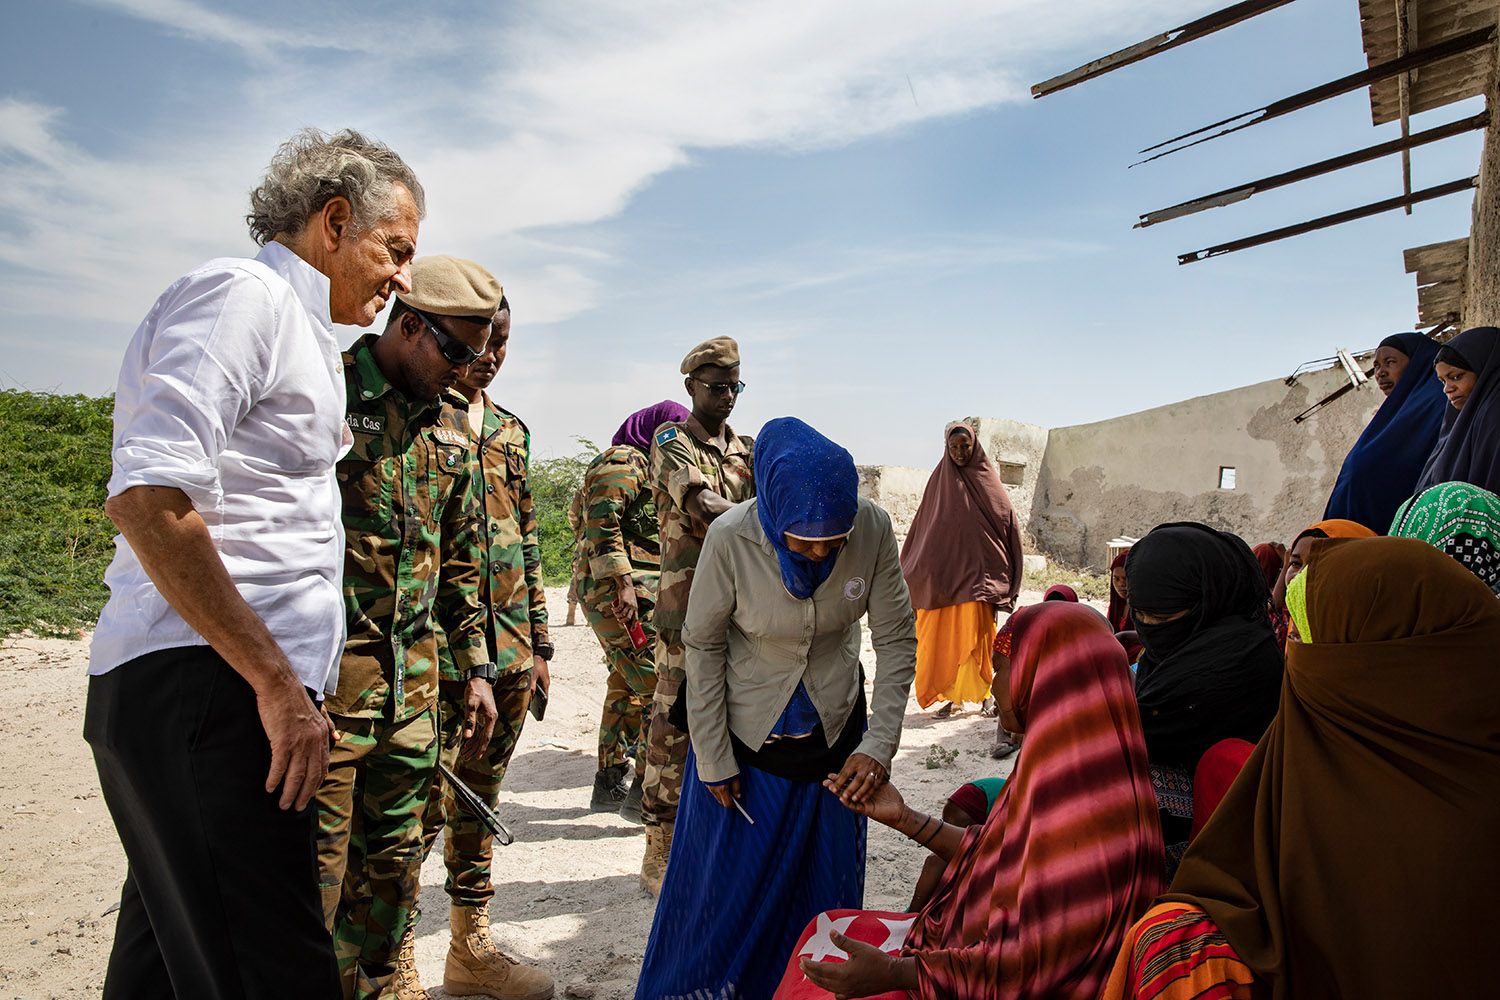 Bernard-Henri Lévy parle avec les femmes de Jazira, elles portent des abayas multicolores, il est accompagné par des militaires.